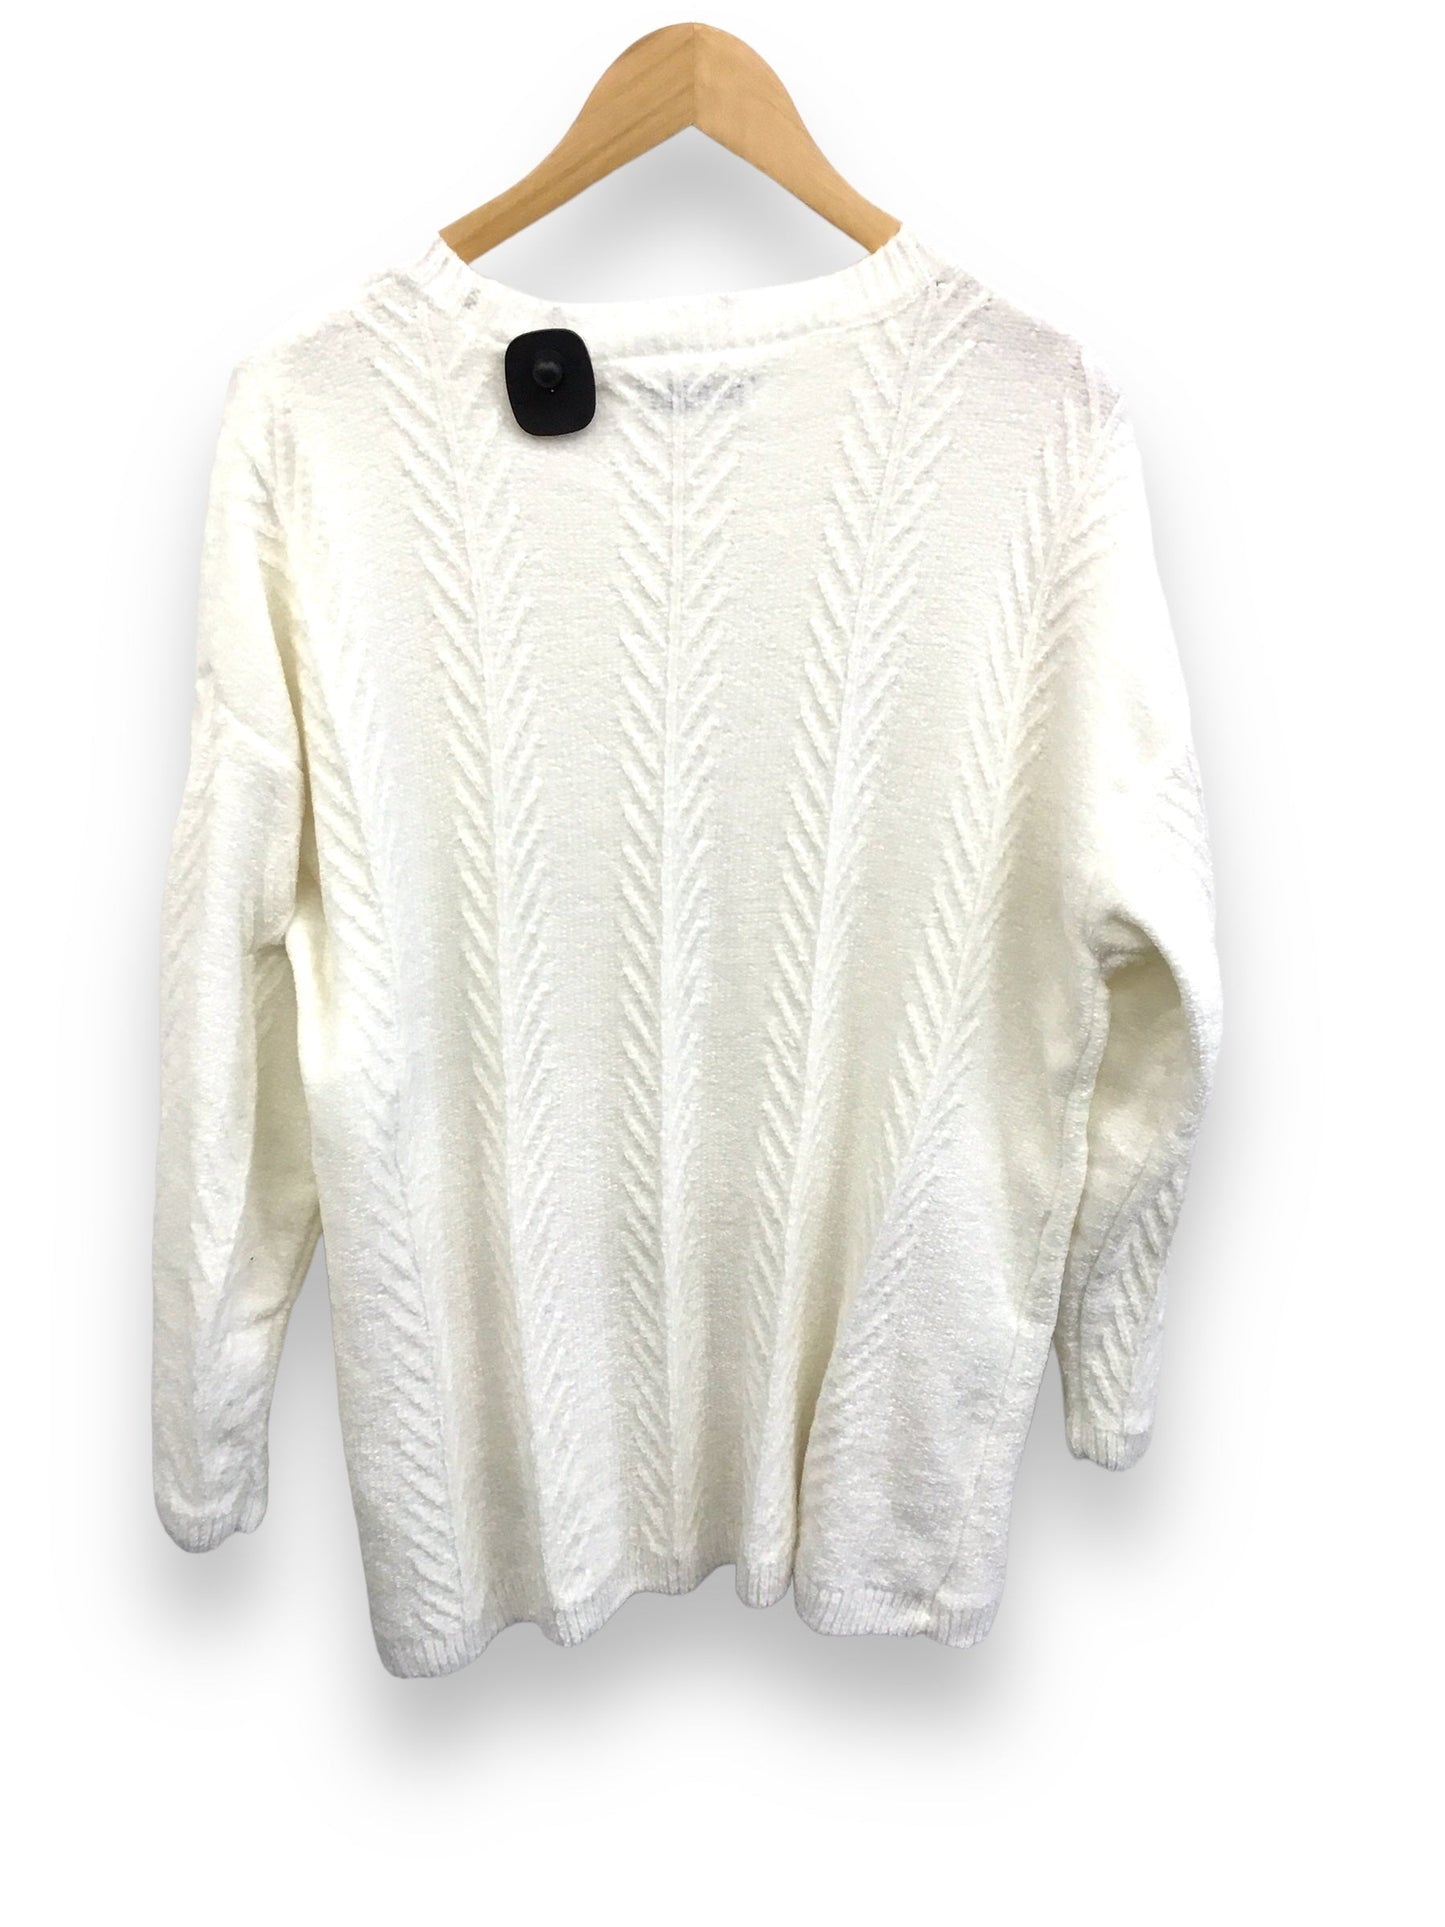 White Sweater Orvis, Size Xxl